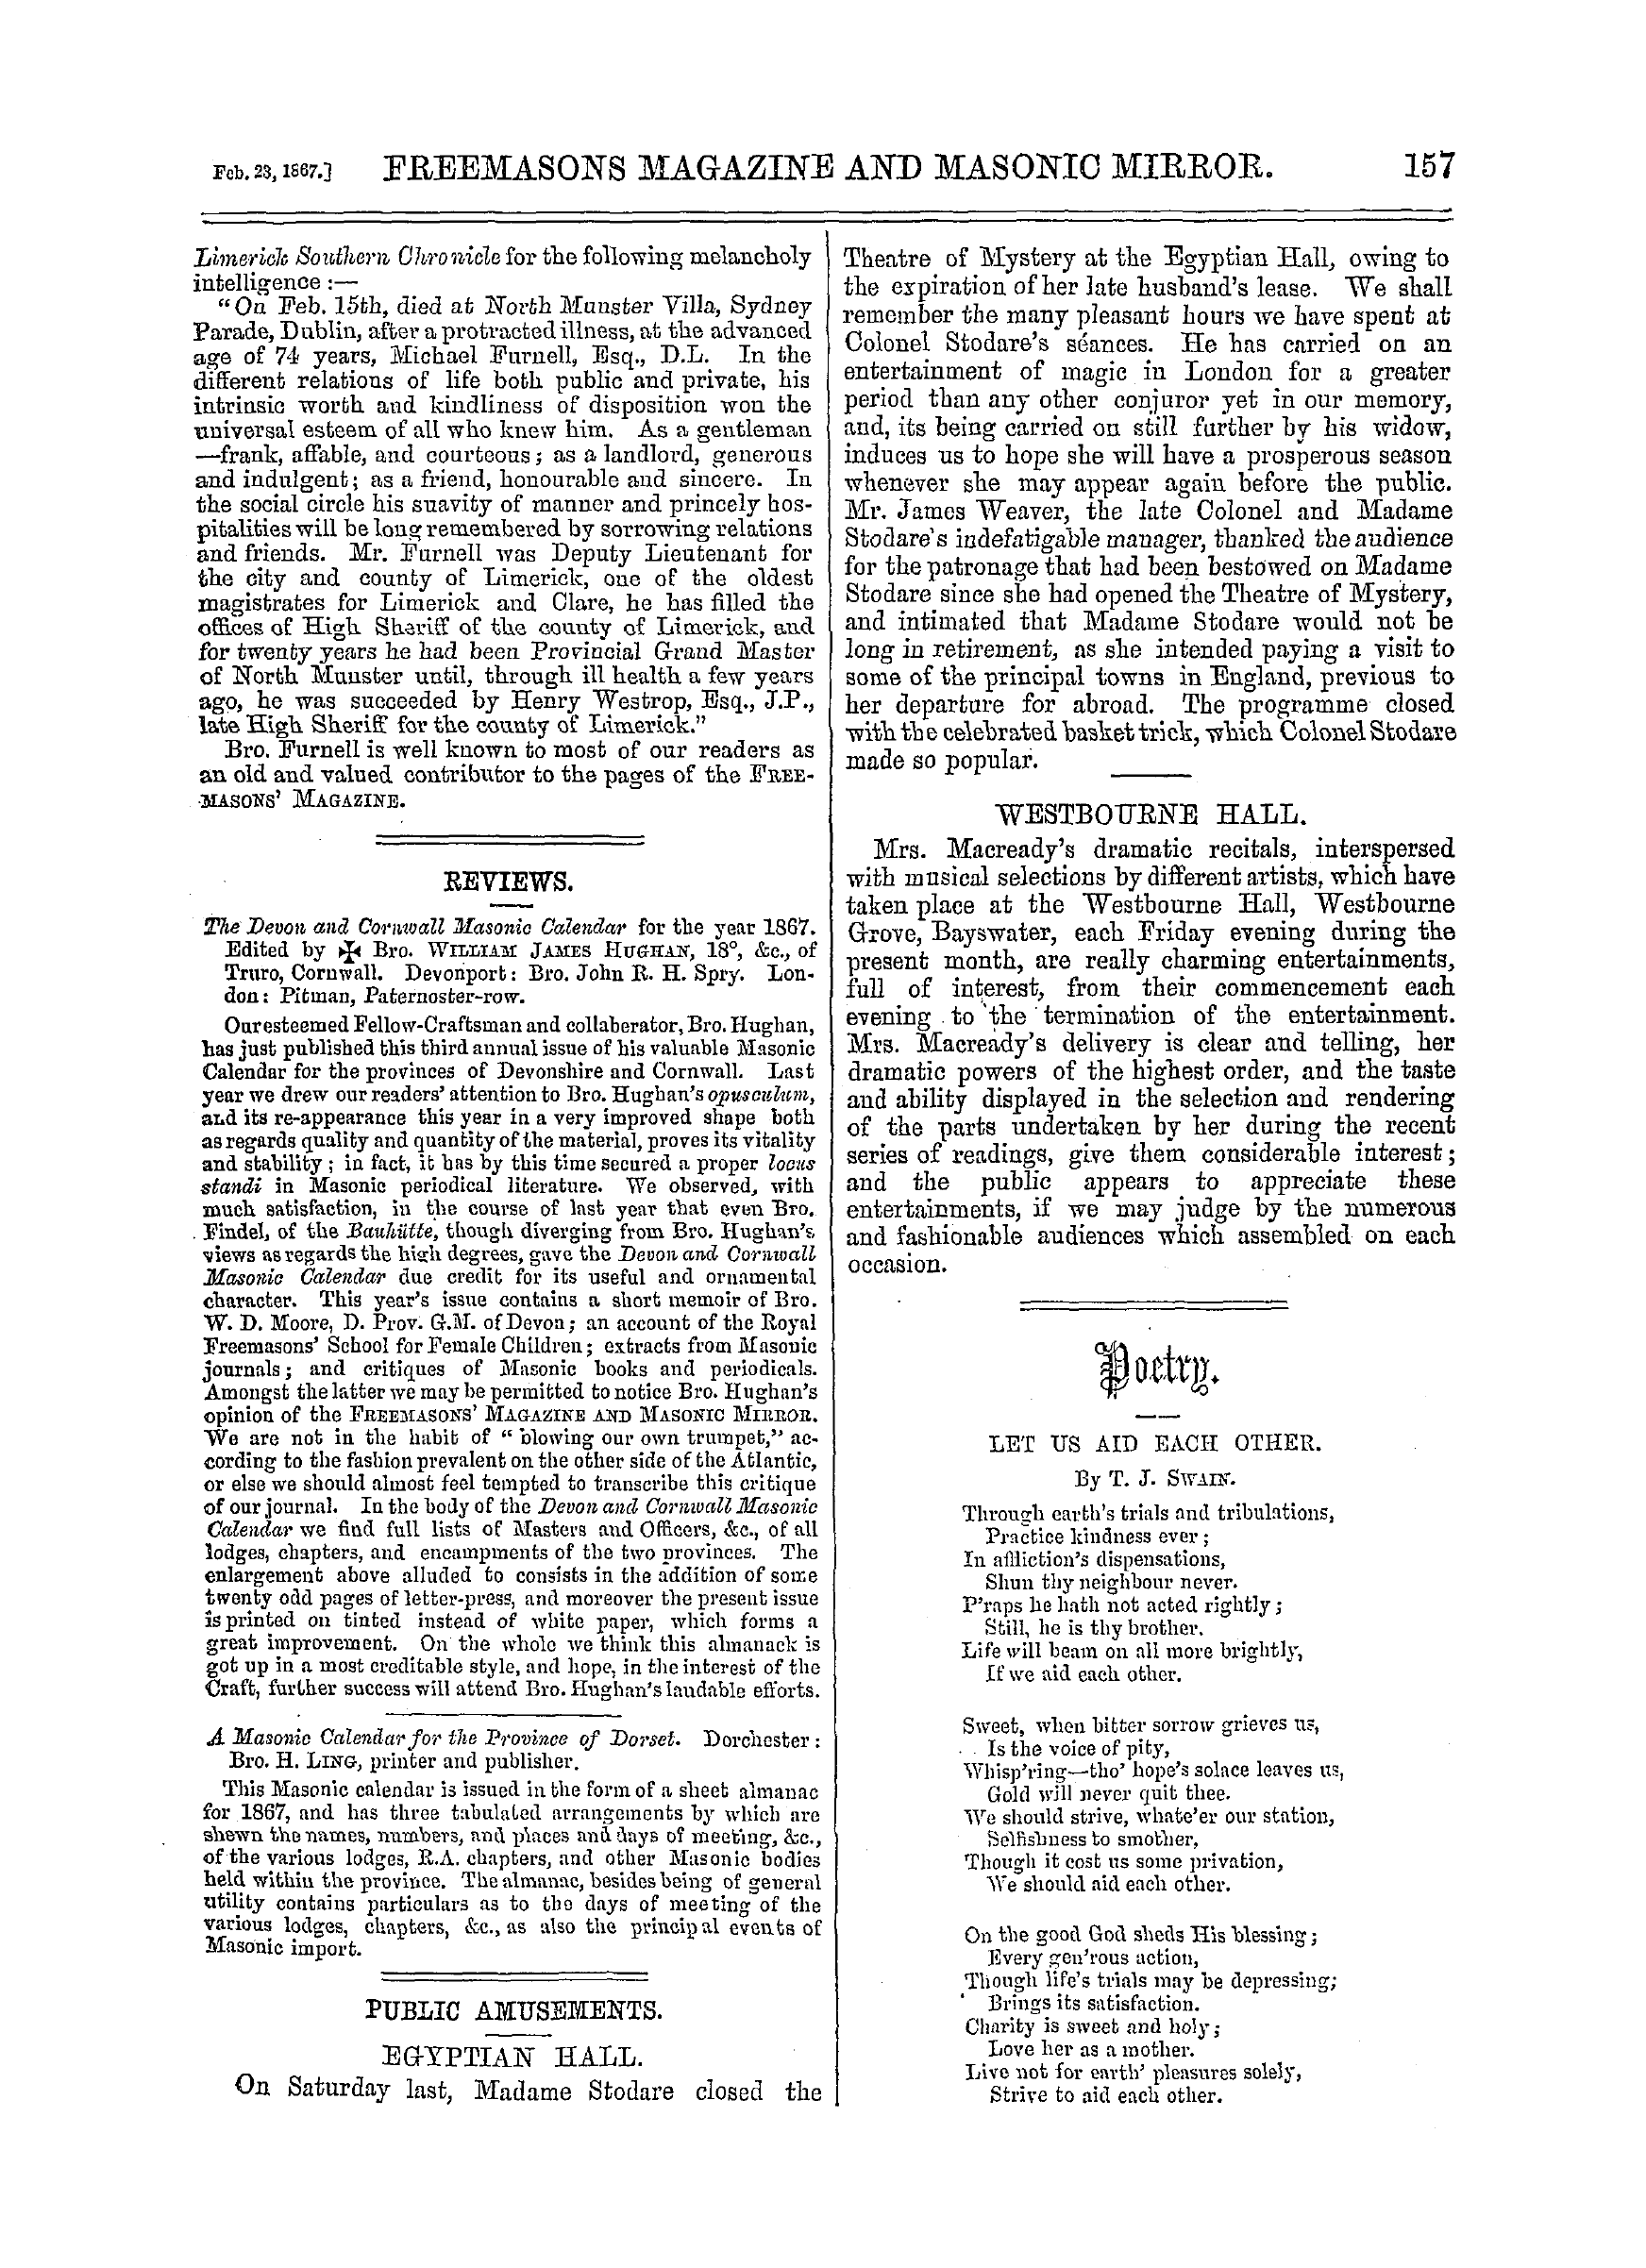 The Freemasons' Monthly Magazine: 1867-02-23: 17